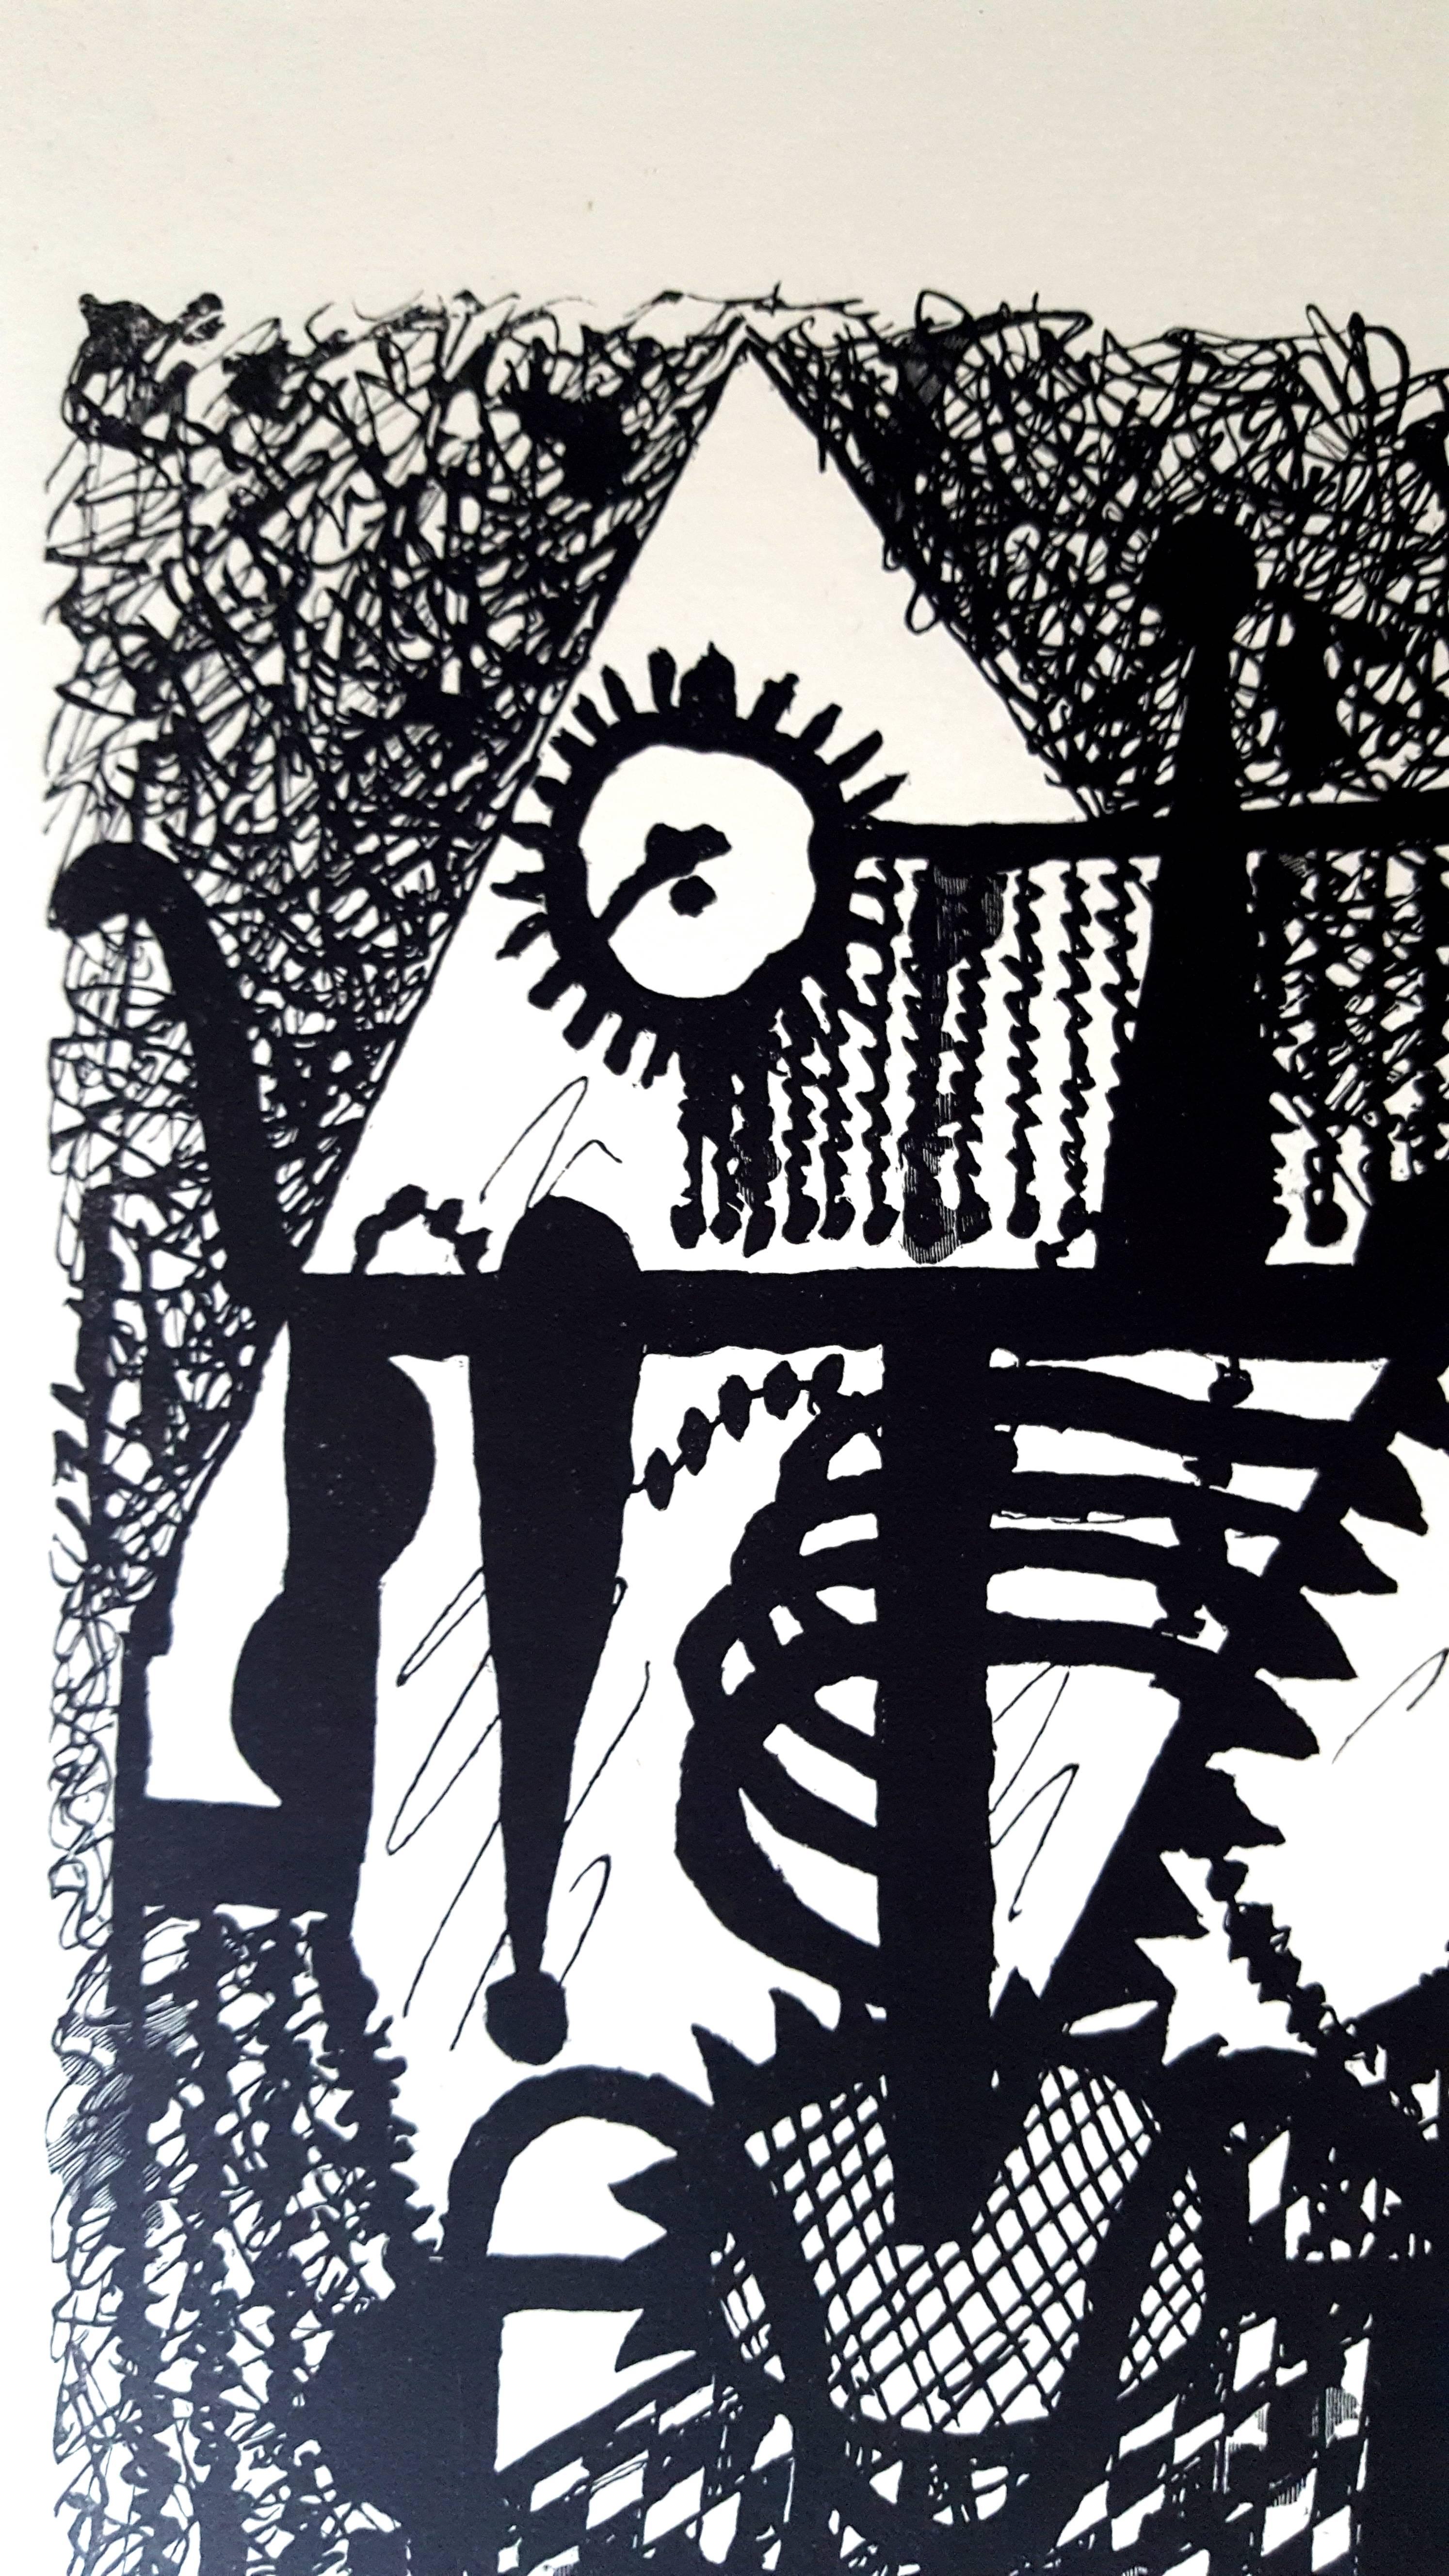 Pablo Picasso (après) 
Helene Chez Archimede

Support : gravé sur bois par Georges Aubert
Dimensions : 44 x 33 cm
Portfolio : Helen Chez Archimede
Année : 1955
Édition : 240 (Ici, c'est l'un des 140 réservés aux membres du Nouveau Cercle de Paris du